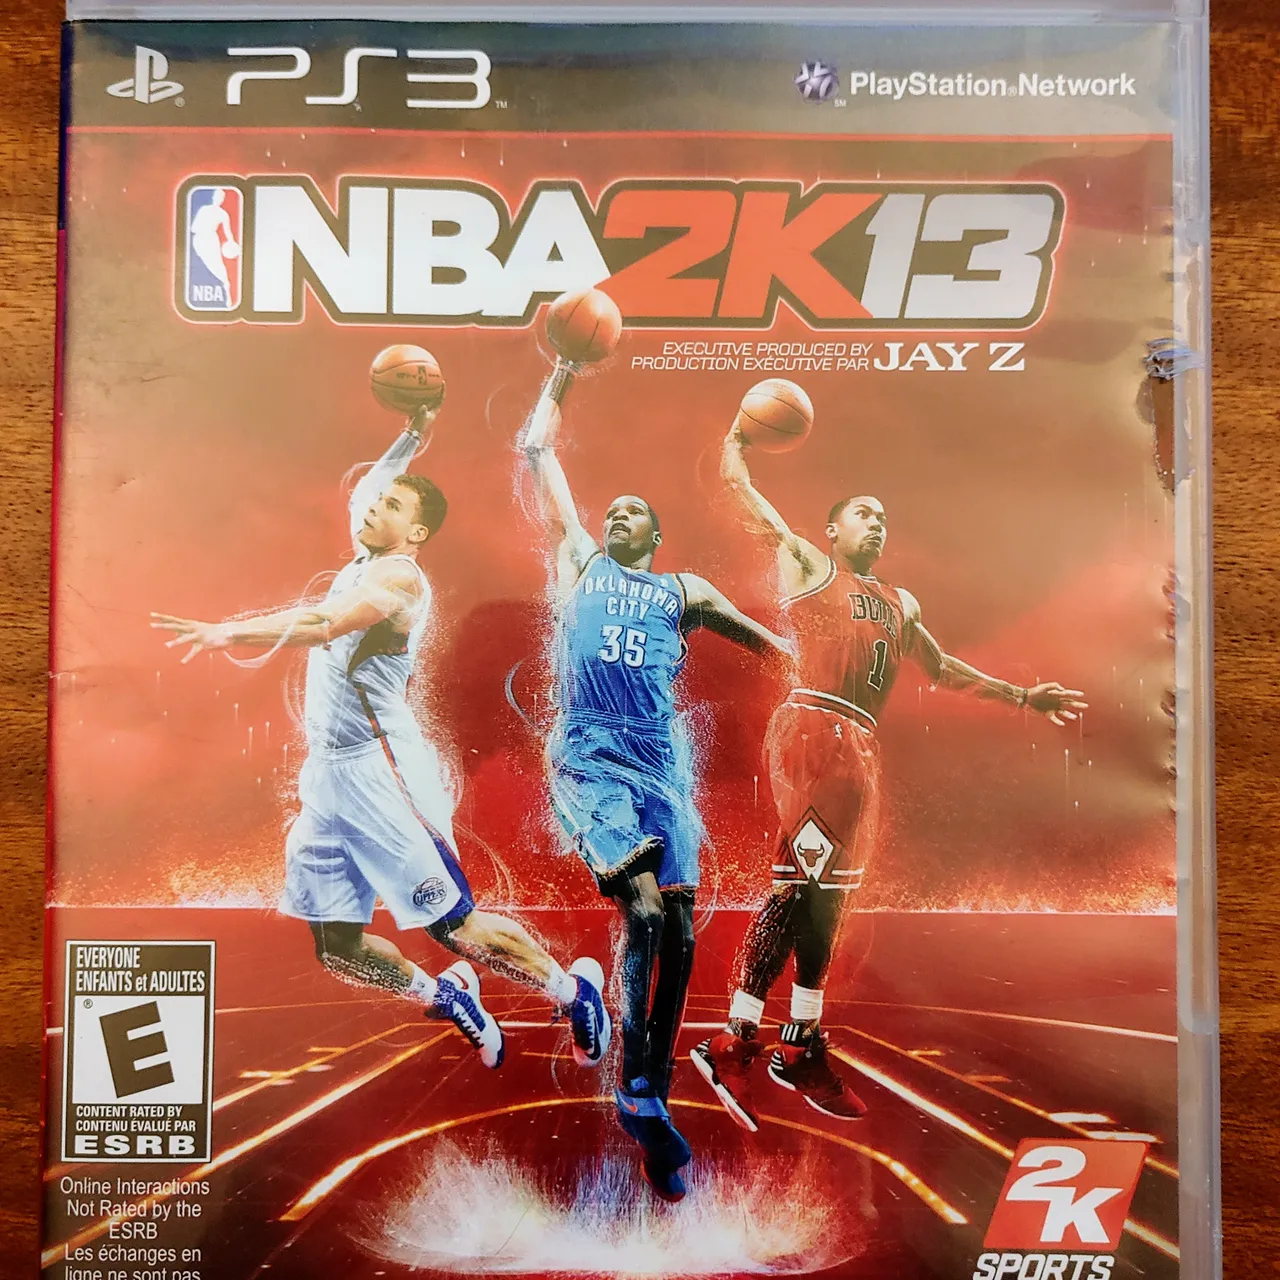 Playstation 3 (PS3) NBA 2k13 Game photo 1